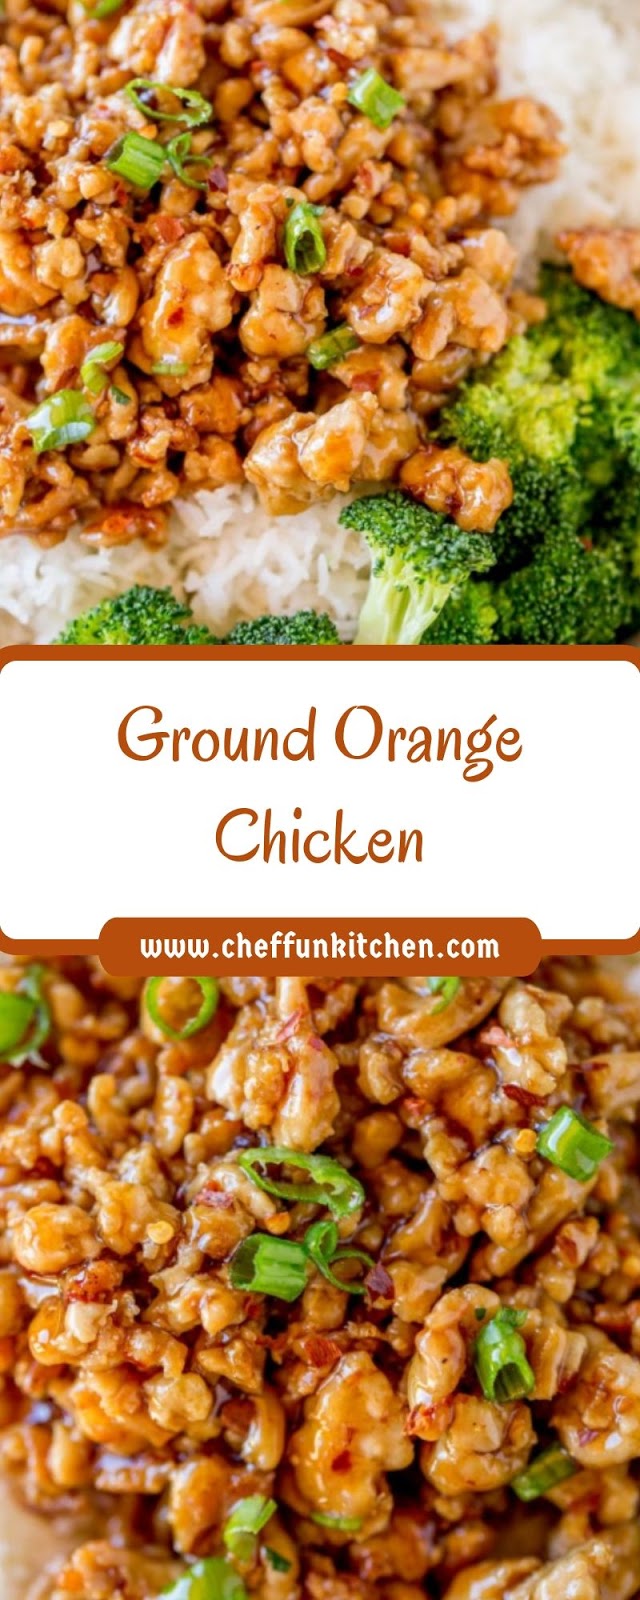 Ground Orange Chicken